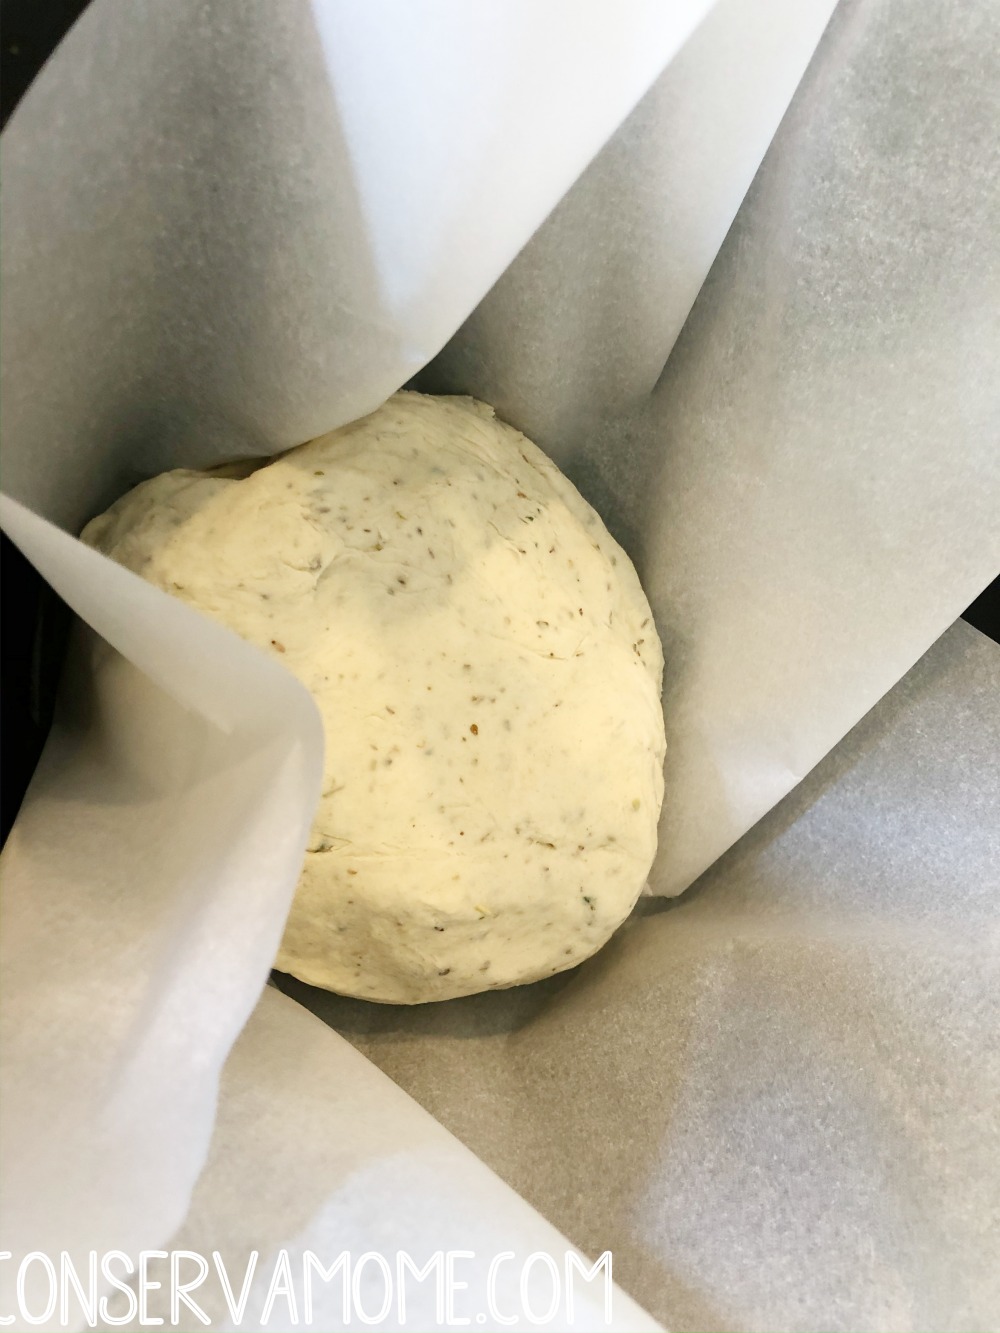 Proofing bread in crockpot